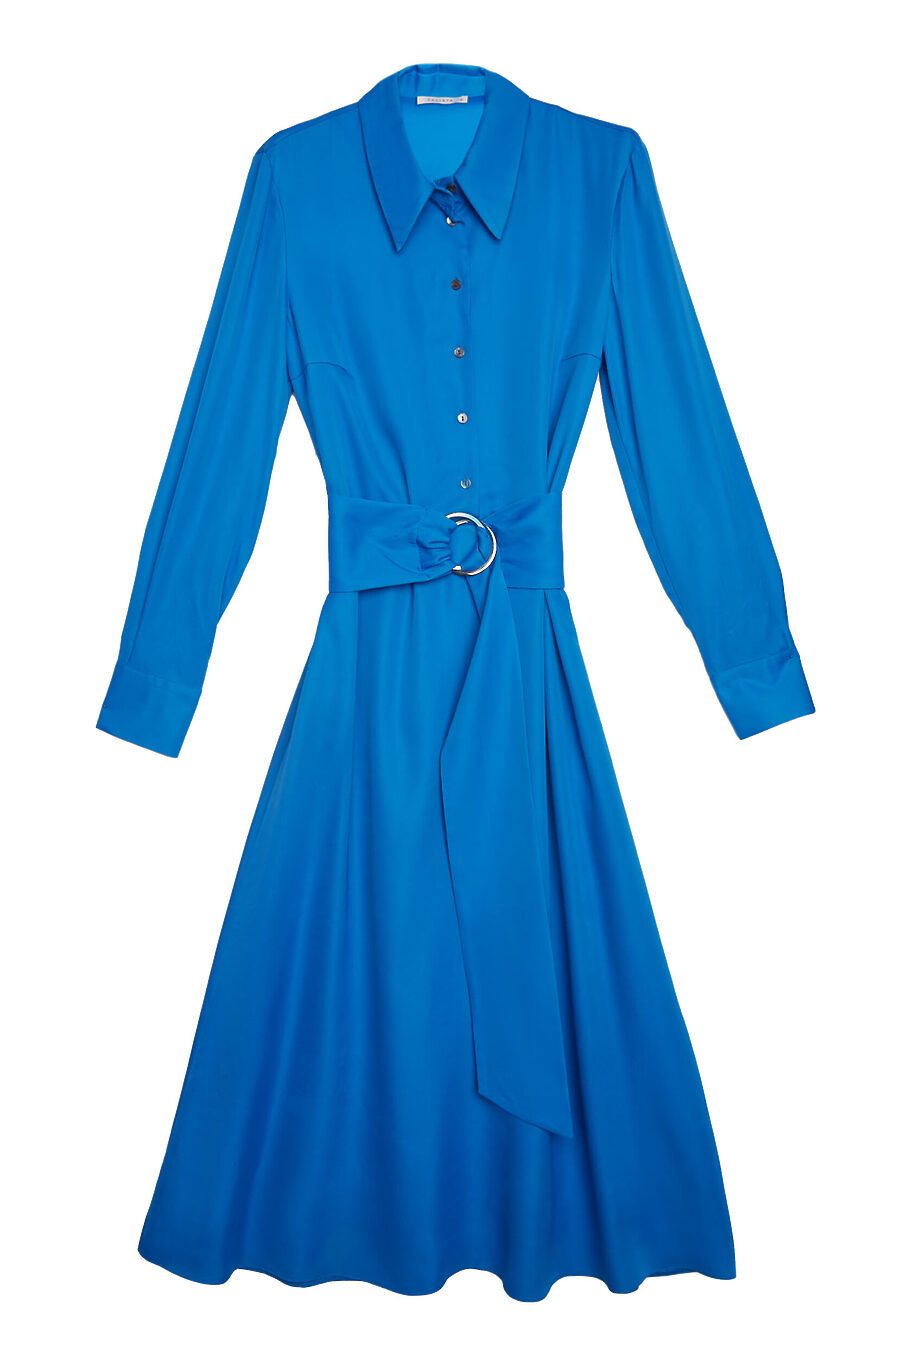 Платье для женщин CALISTA 741826 купить оптом от производителя. Совместная покупка женской одежды в OptMoyo